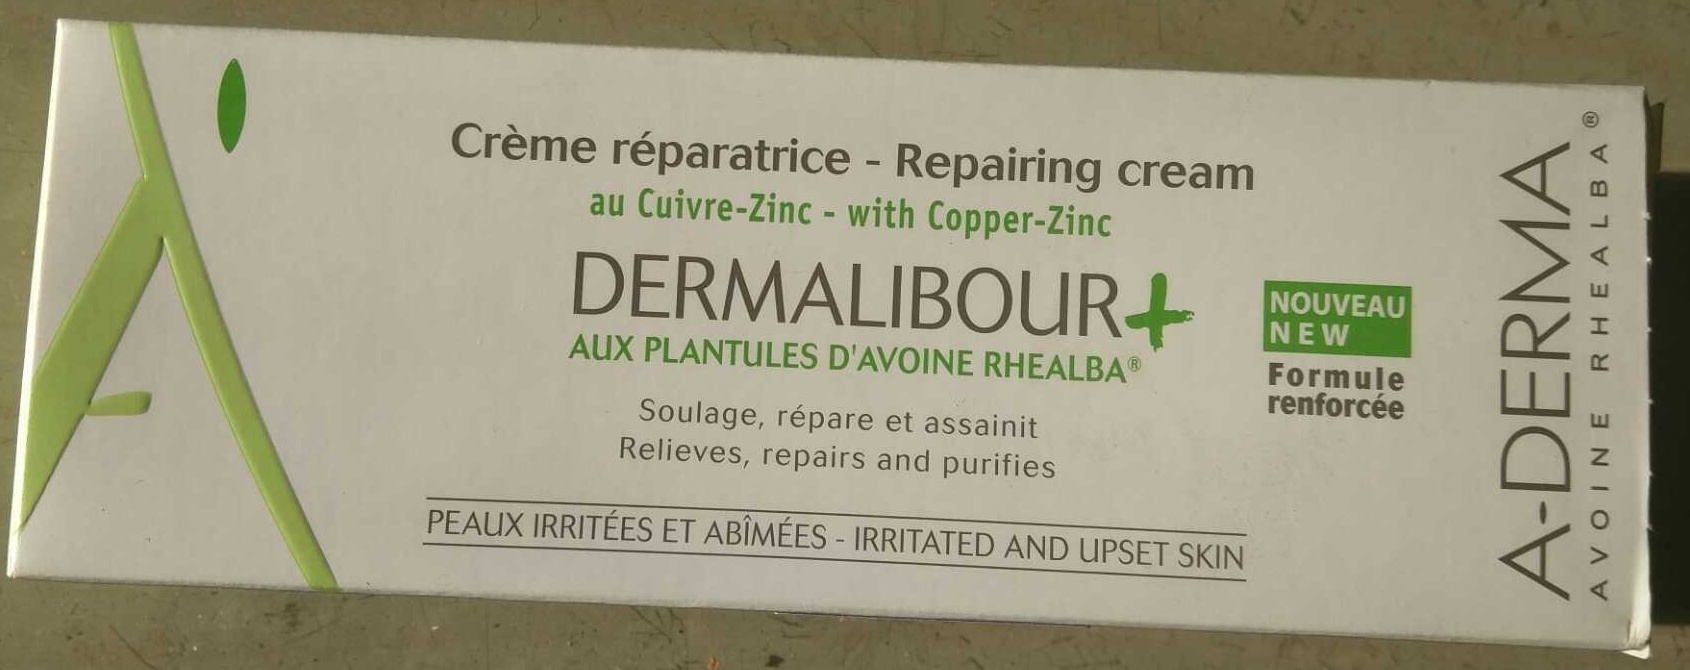 Crème réparatrice Dermalibour+ - Produit - fr